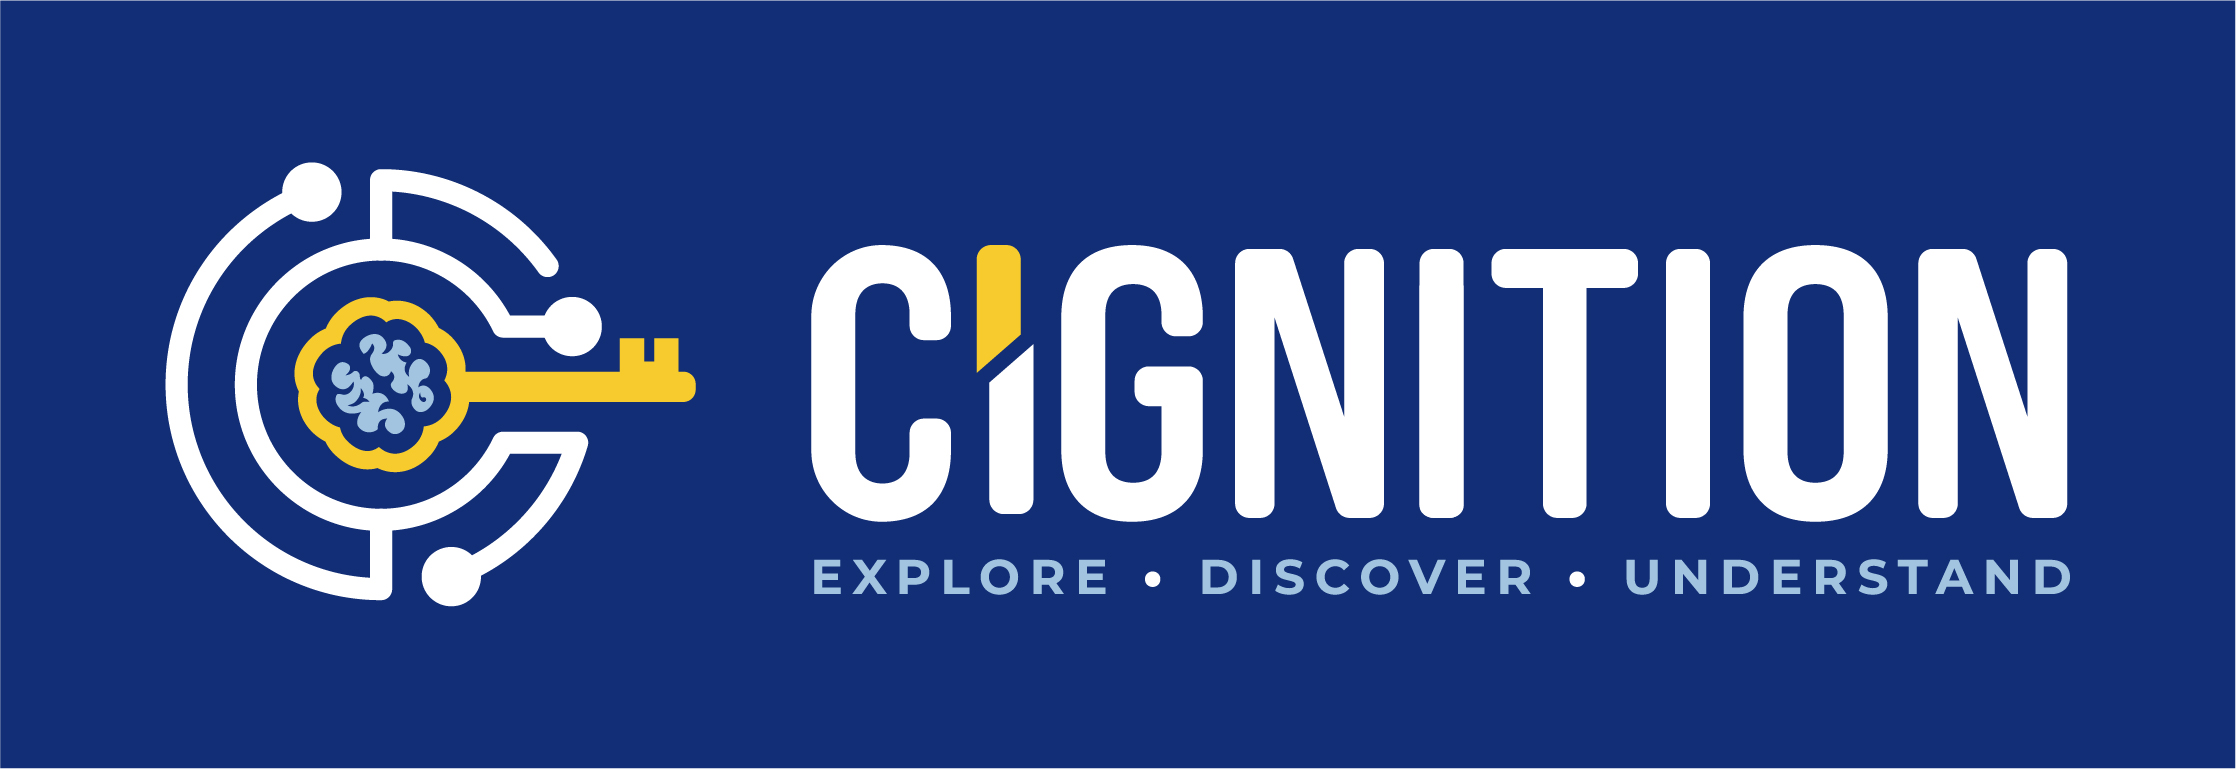 Cignition, Inc. logo